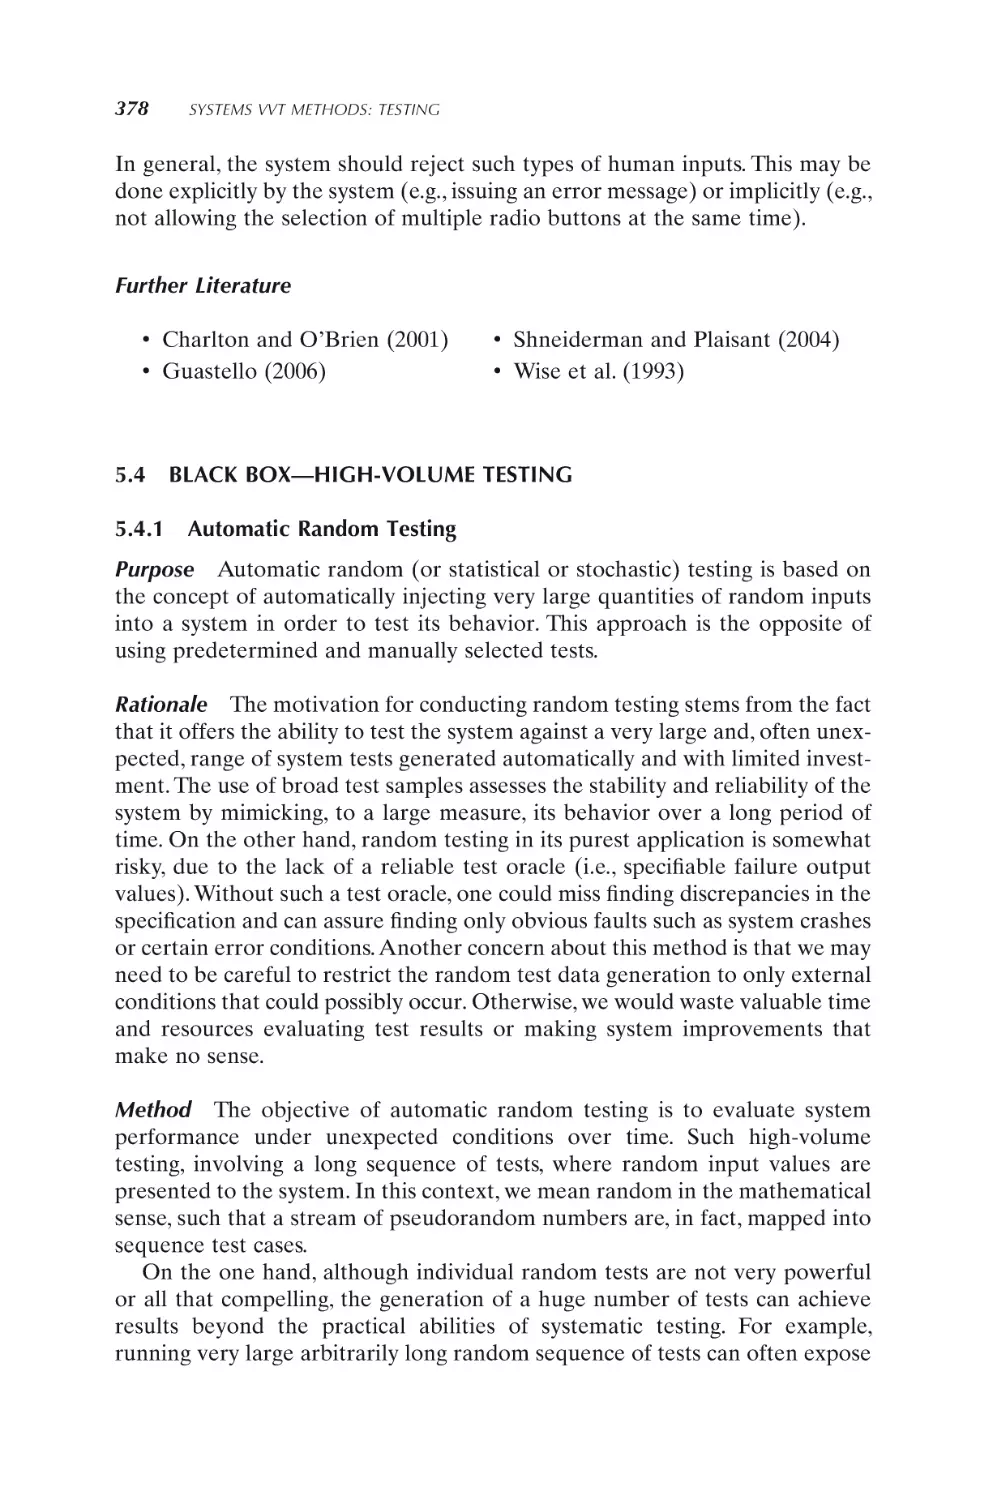 5.4 BLACK BOX—HIGH-VOLUME TESTING
5.4.1 Automatic Random Testing